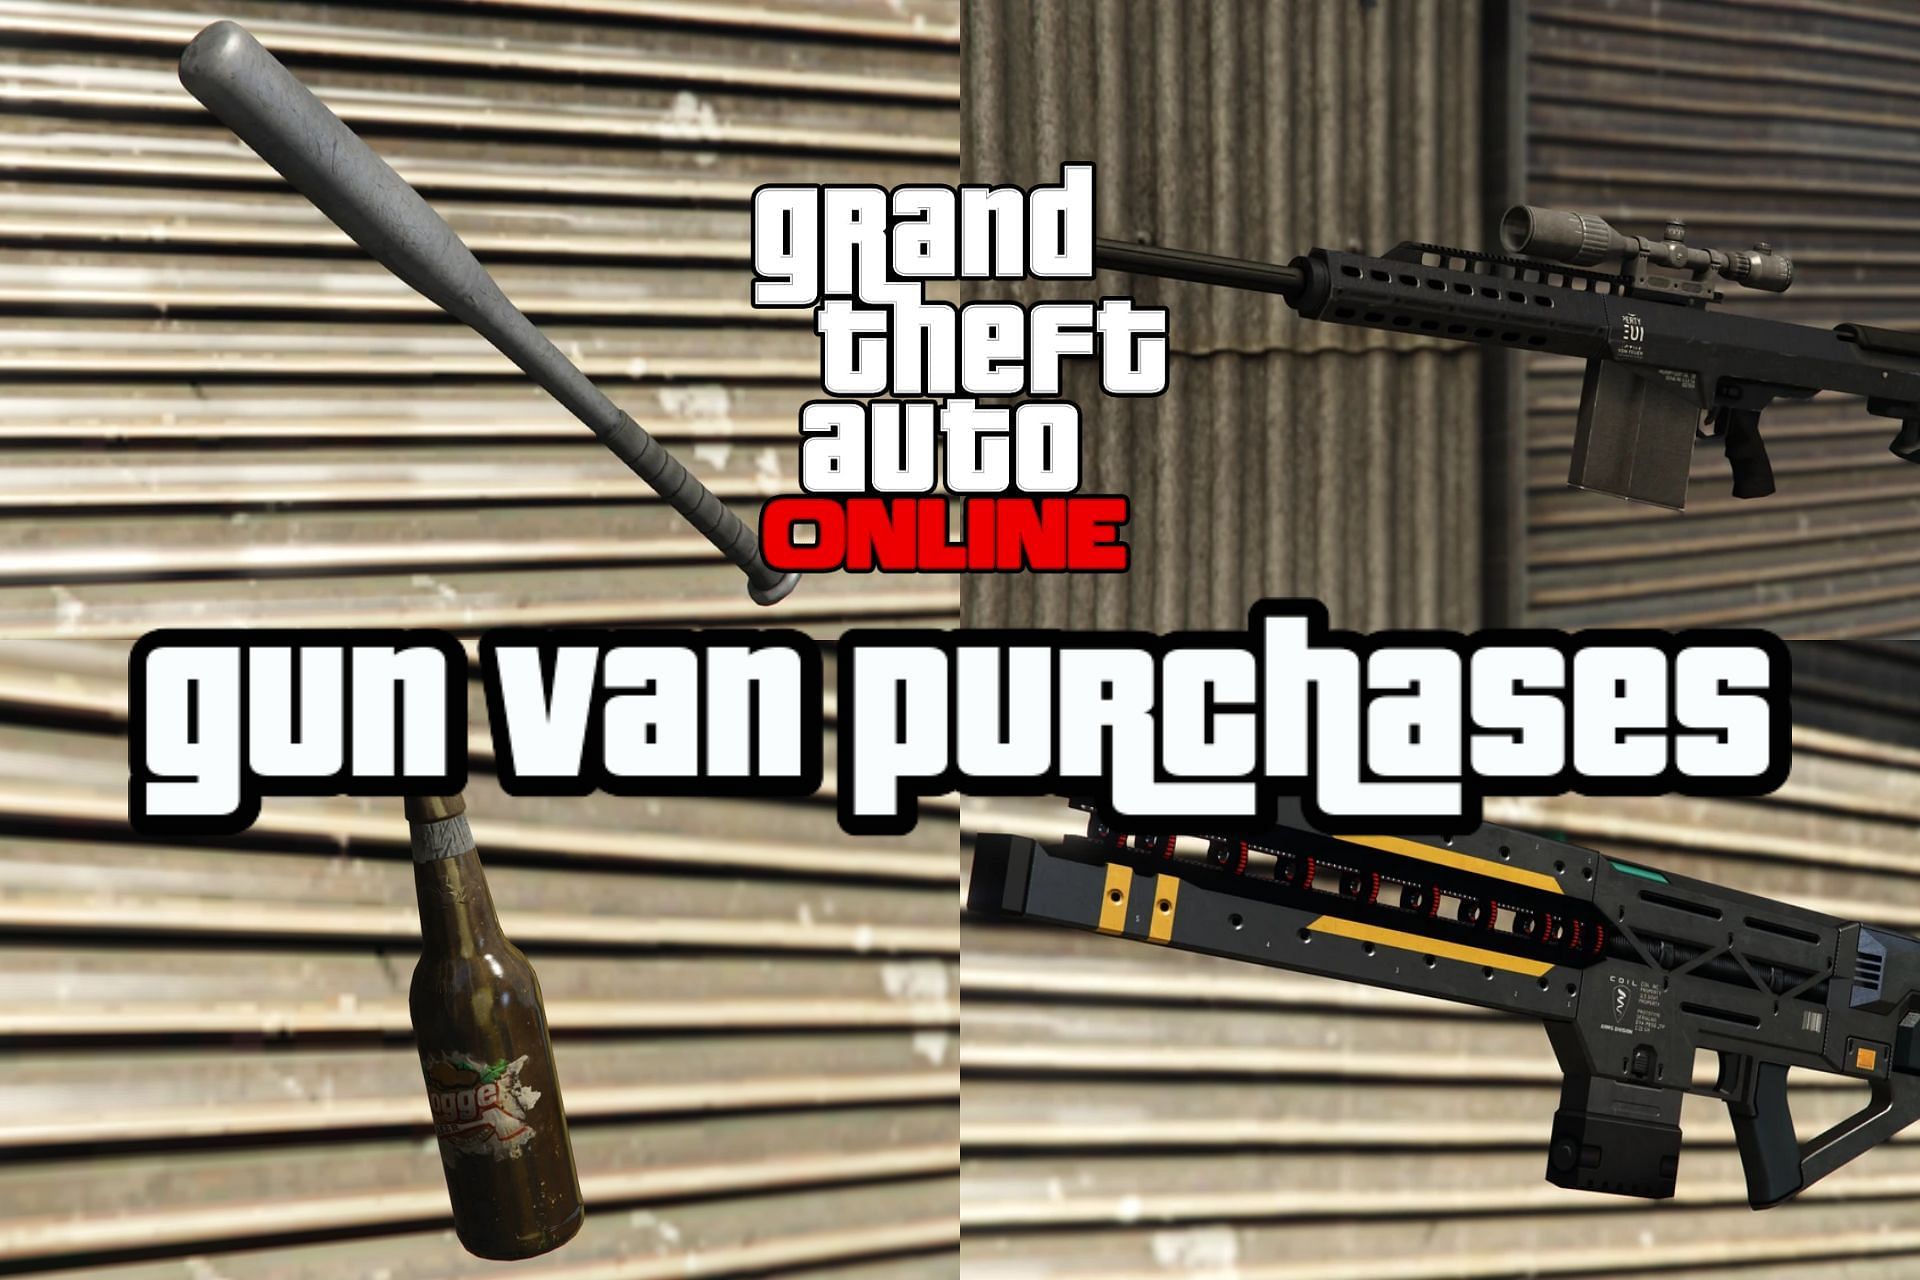 The Gun Van delivered a slew of useful weapons in GTA Online (Image via Sportskeeda)